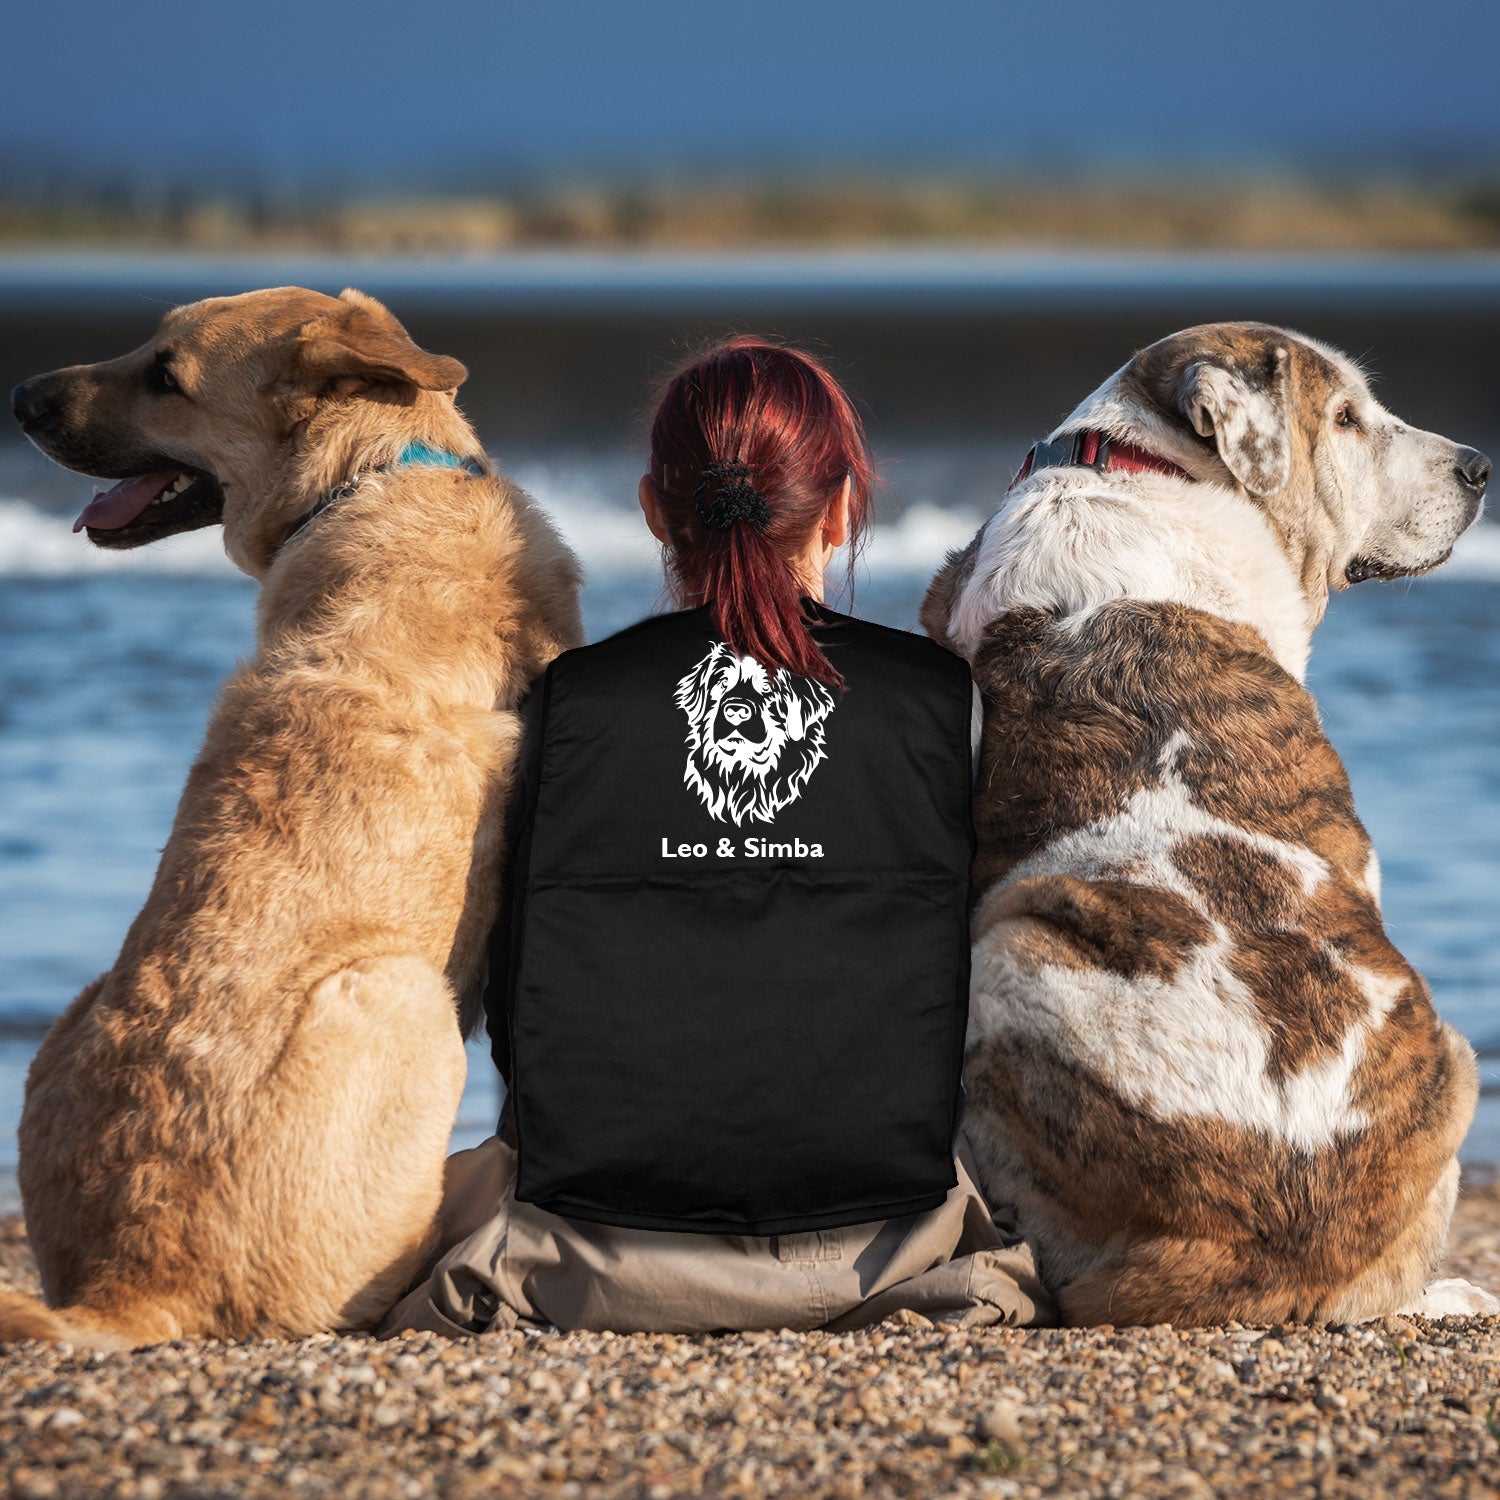 Basset Hound 4 - Hundesportweste mit Rückentasche MIL-TEC-Tierisch-tolle Geschenke-Tierisch-tolle-Geschenke